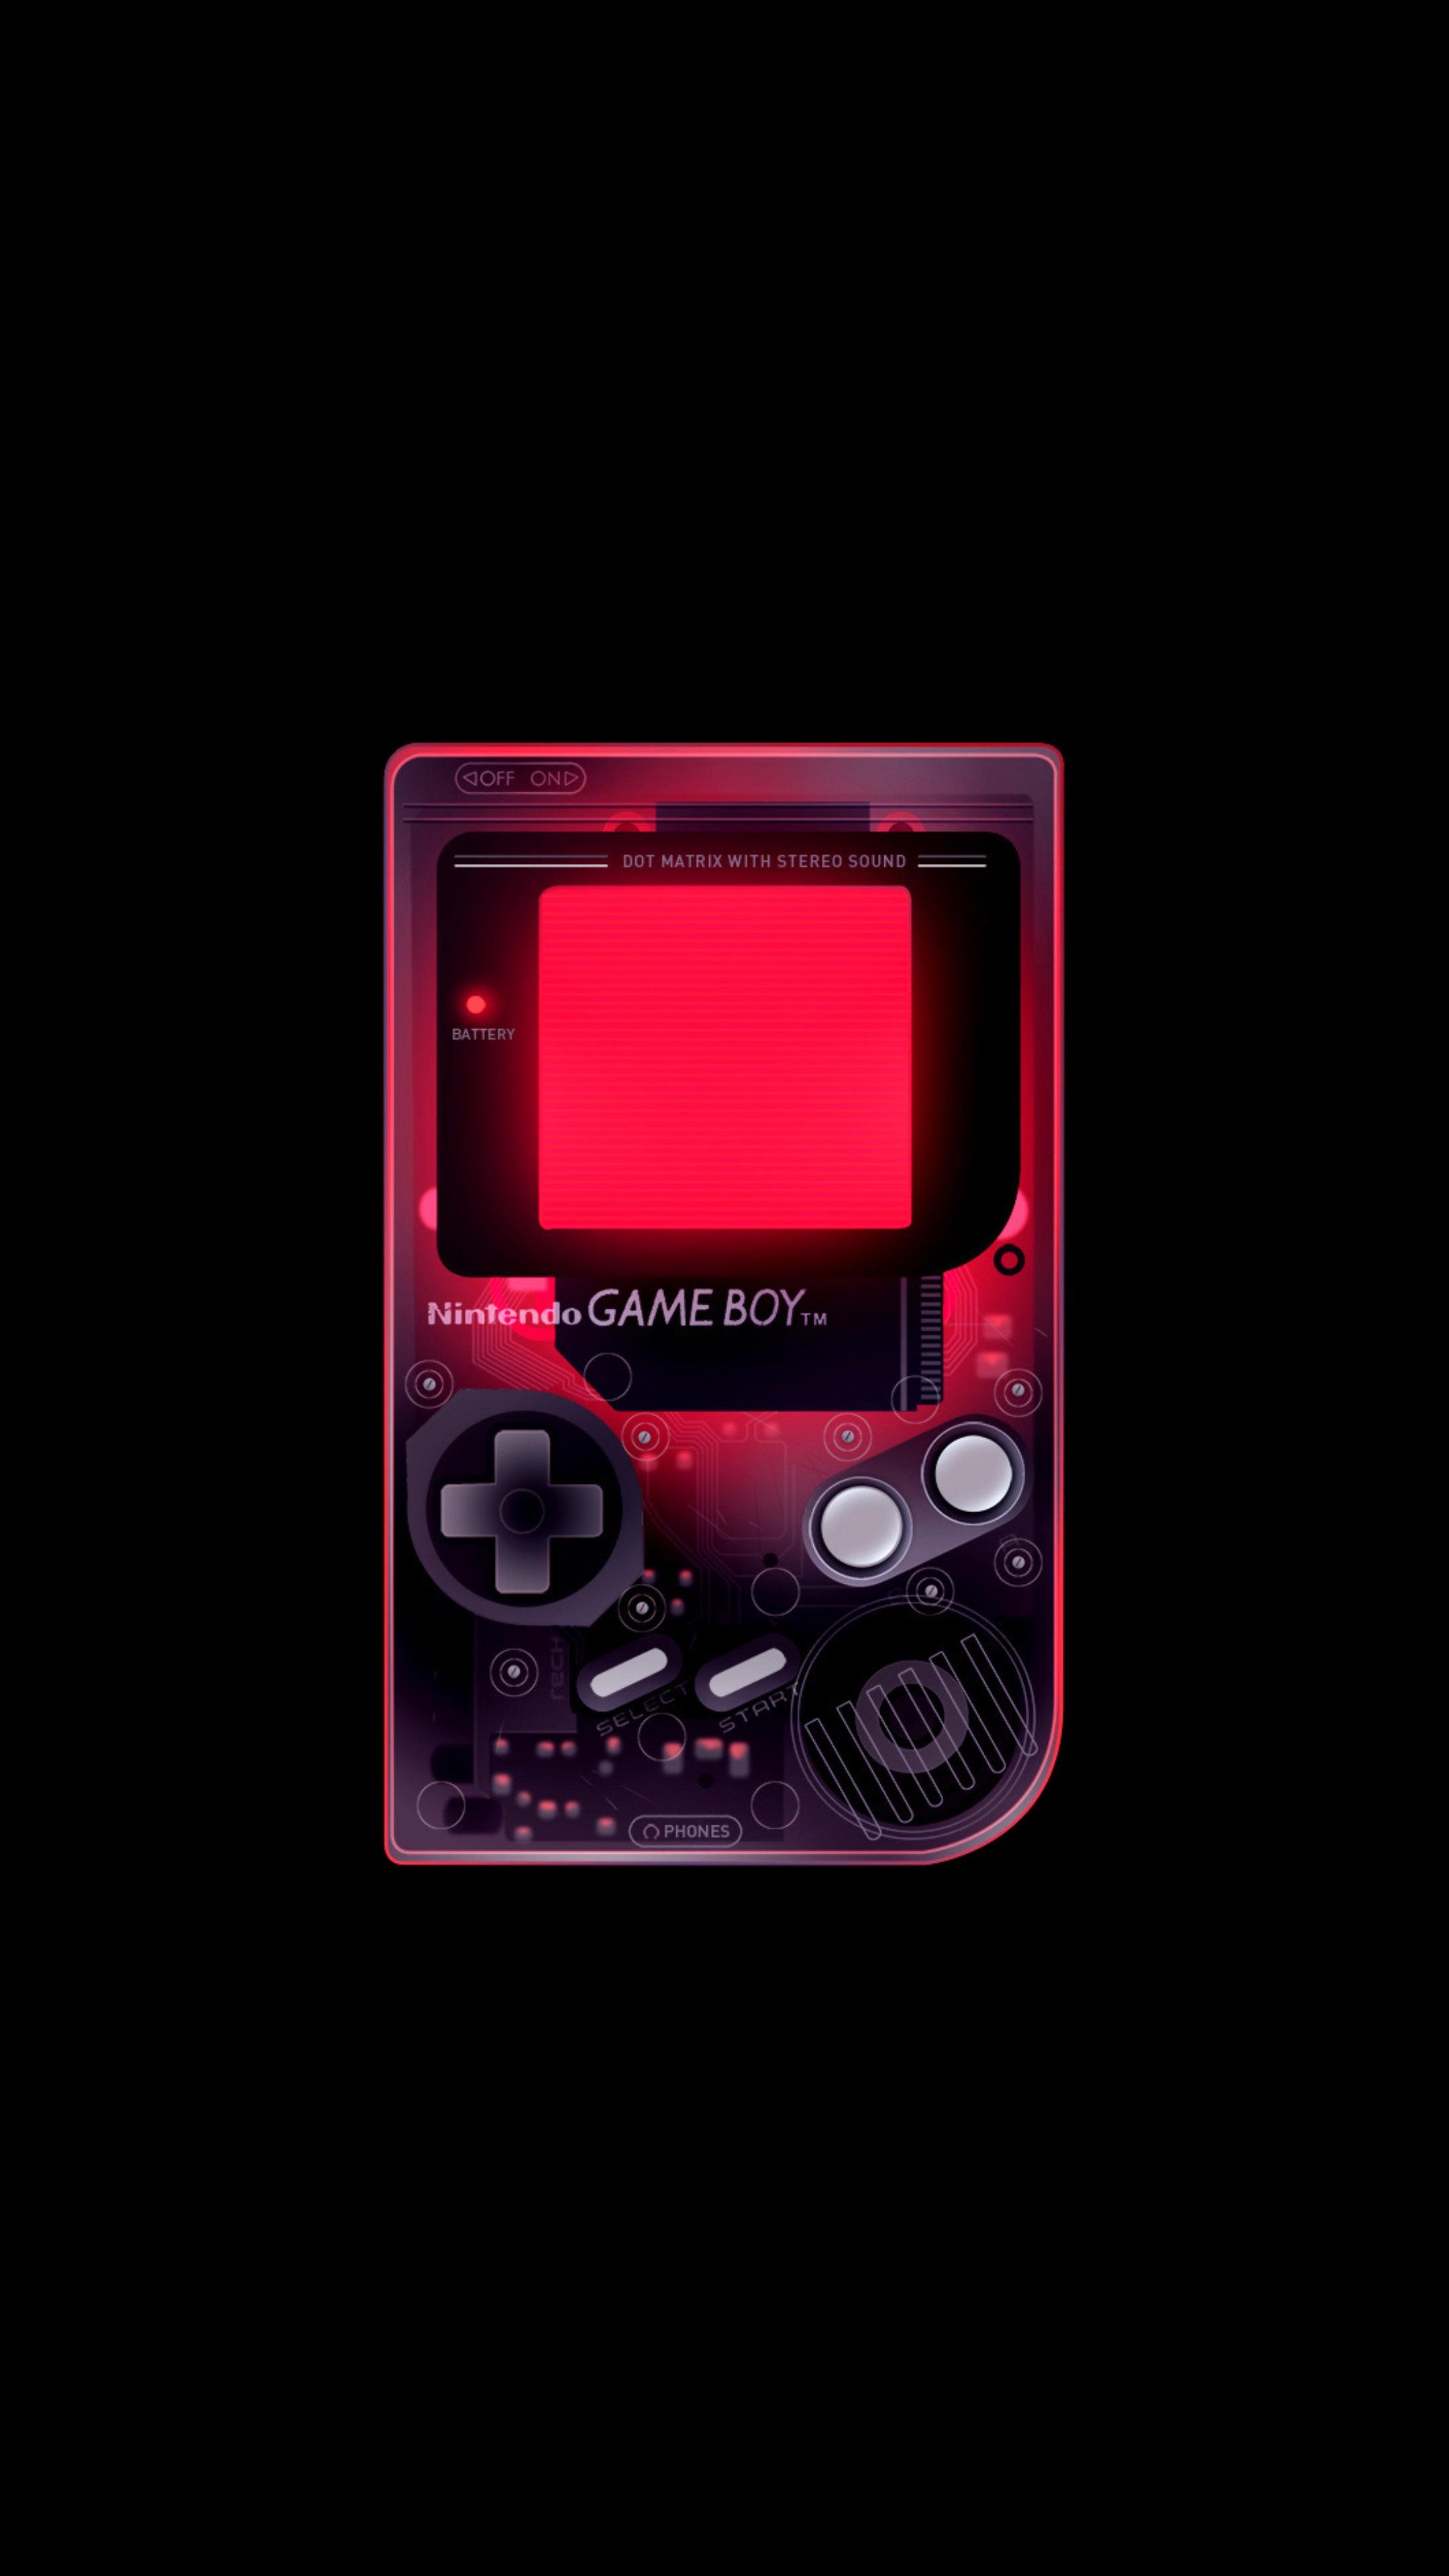 Nintendo Game Boy, OLED backgrounds, Classic gaming nostalgia, Retro vibes, 2160x3840 4K Phone